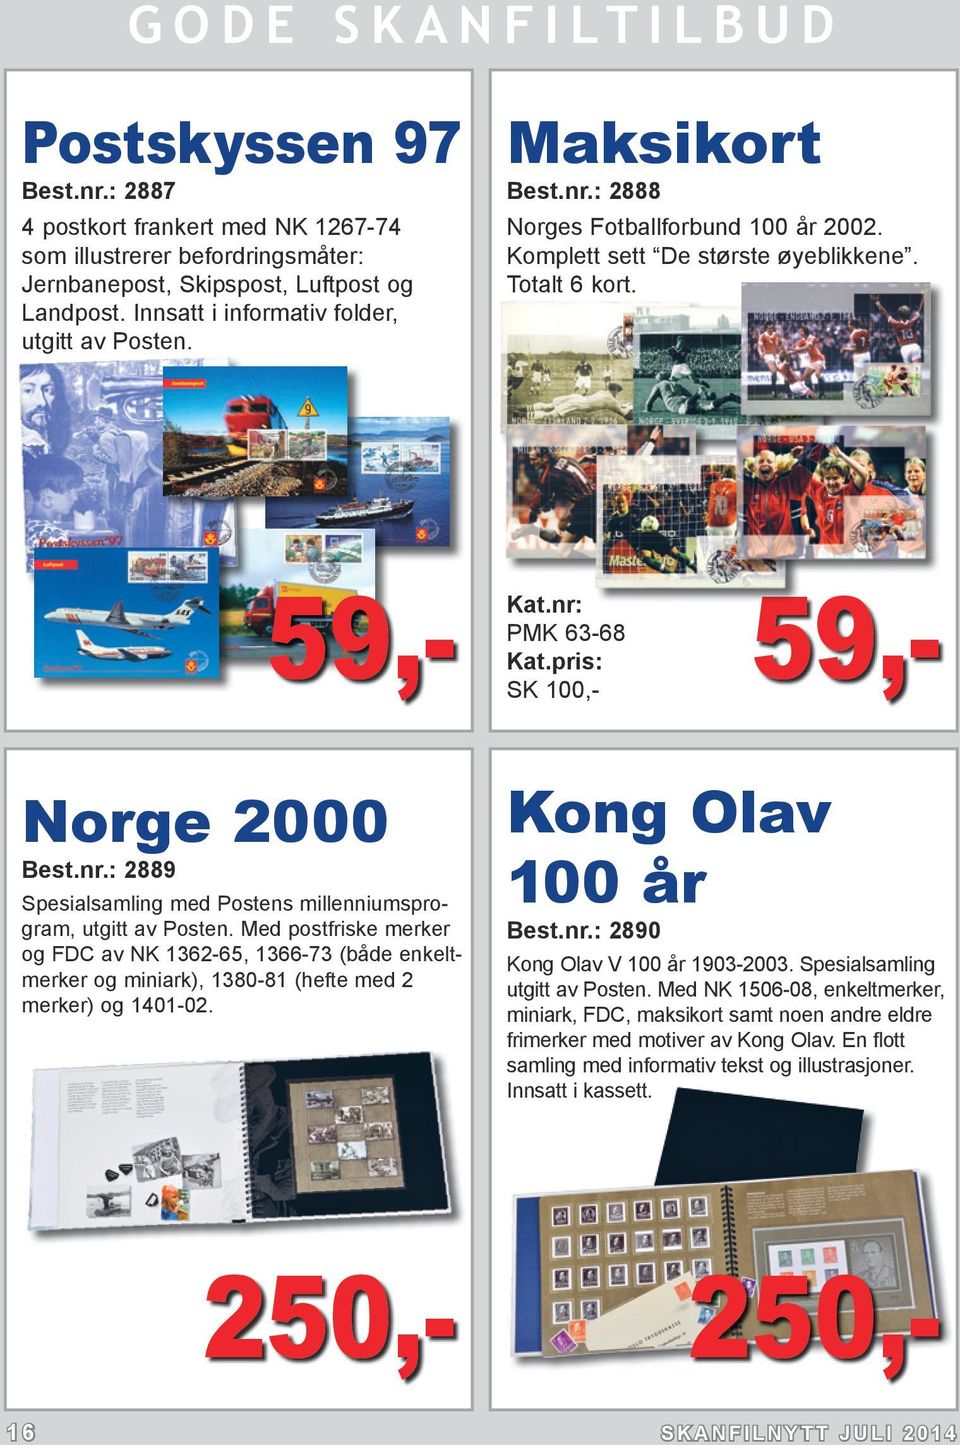 Med postfriske merker og FDC av NK 1362-65, 1366-73 (både enkeltmerker og miniark), 1380-81 (hefte med 2 merker) og 1401-02. Kong Olav 100 år Best.nr.: 2890 Kong Olav V 100 år 1903-2003.